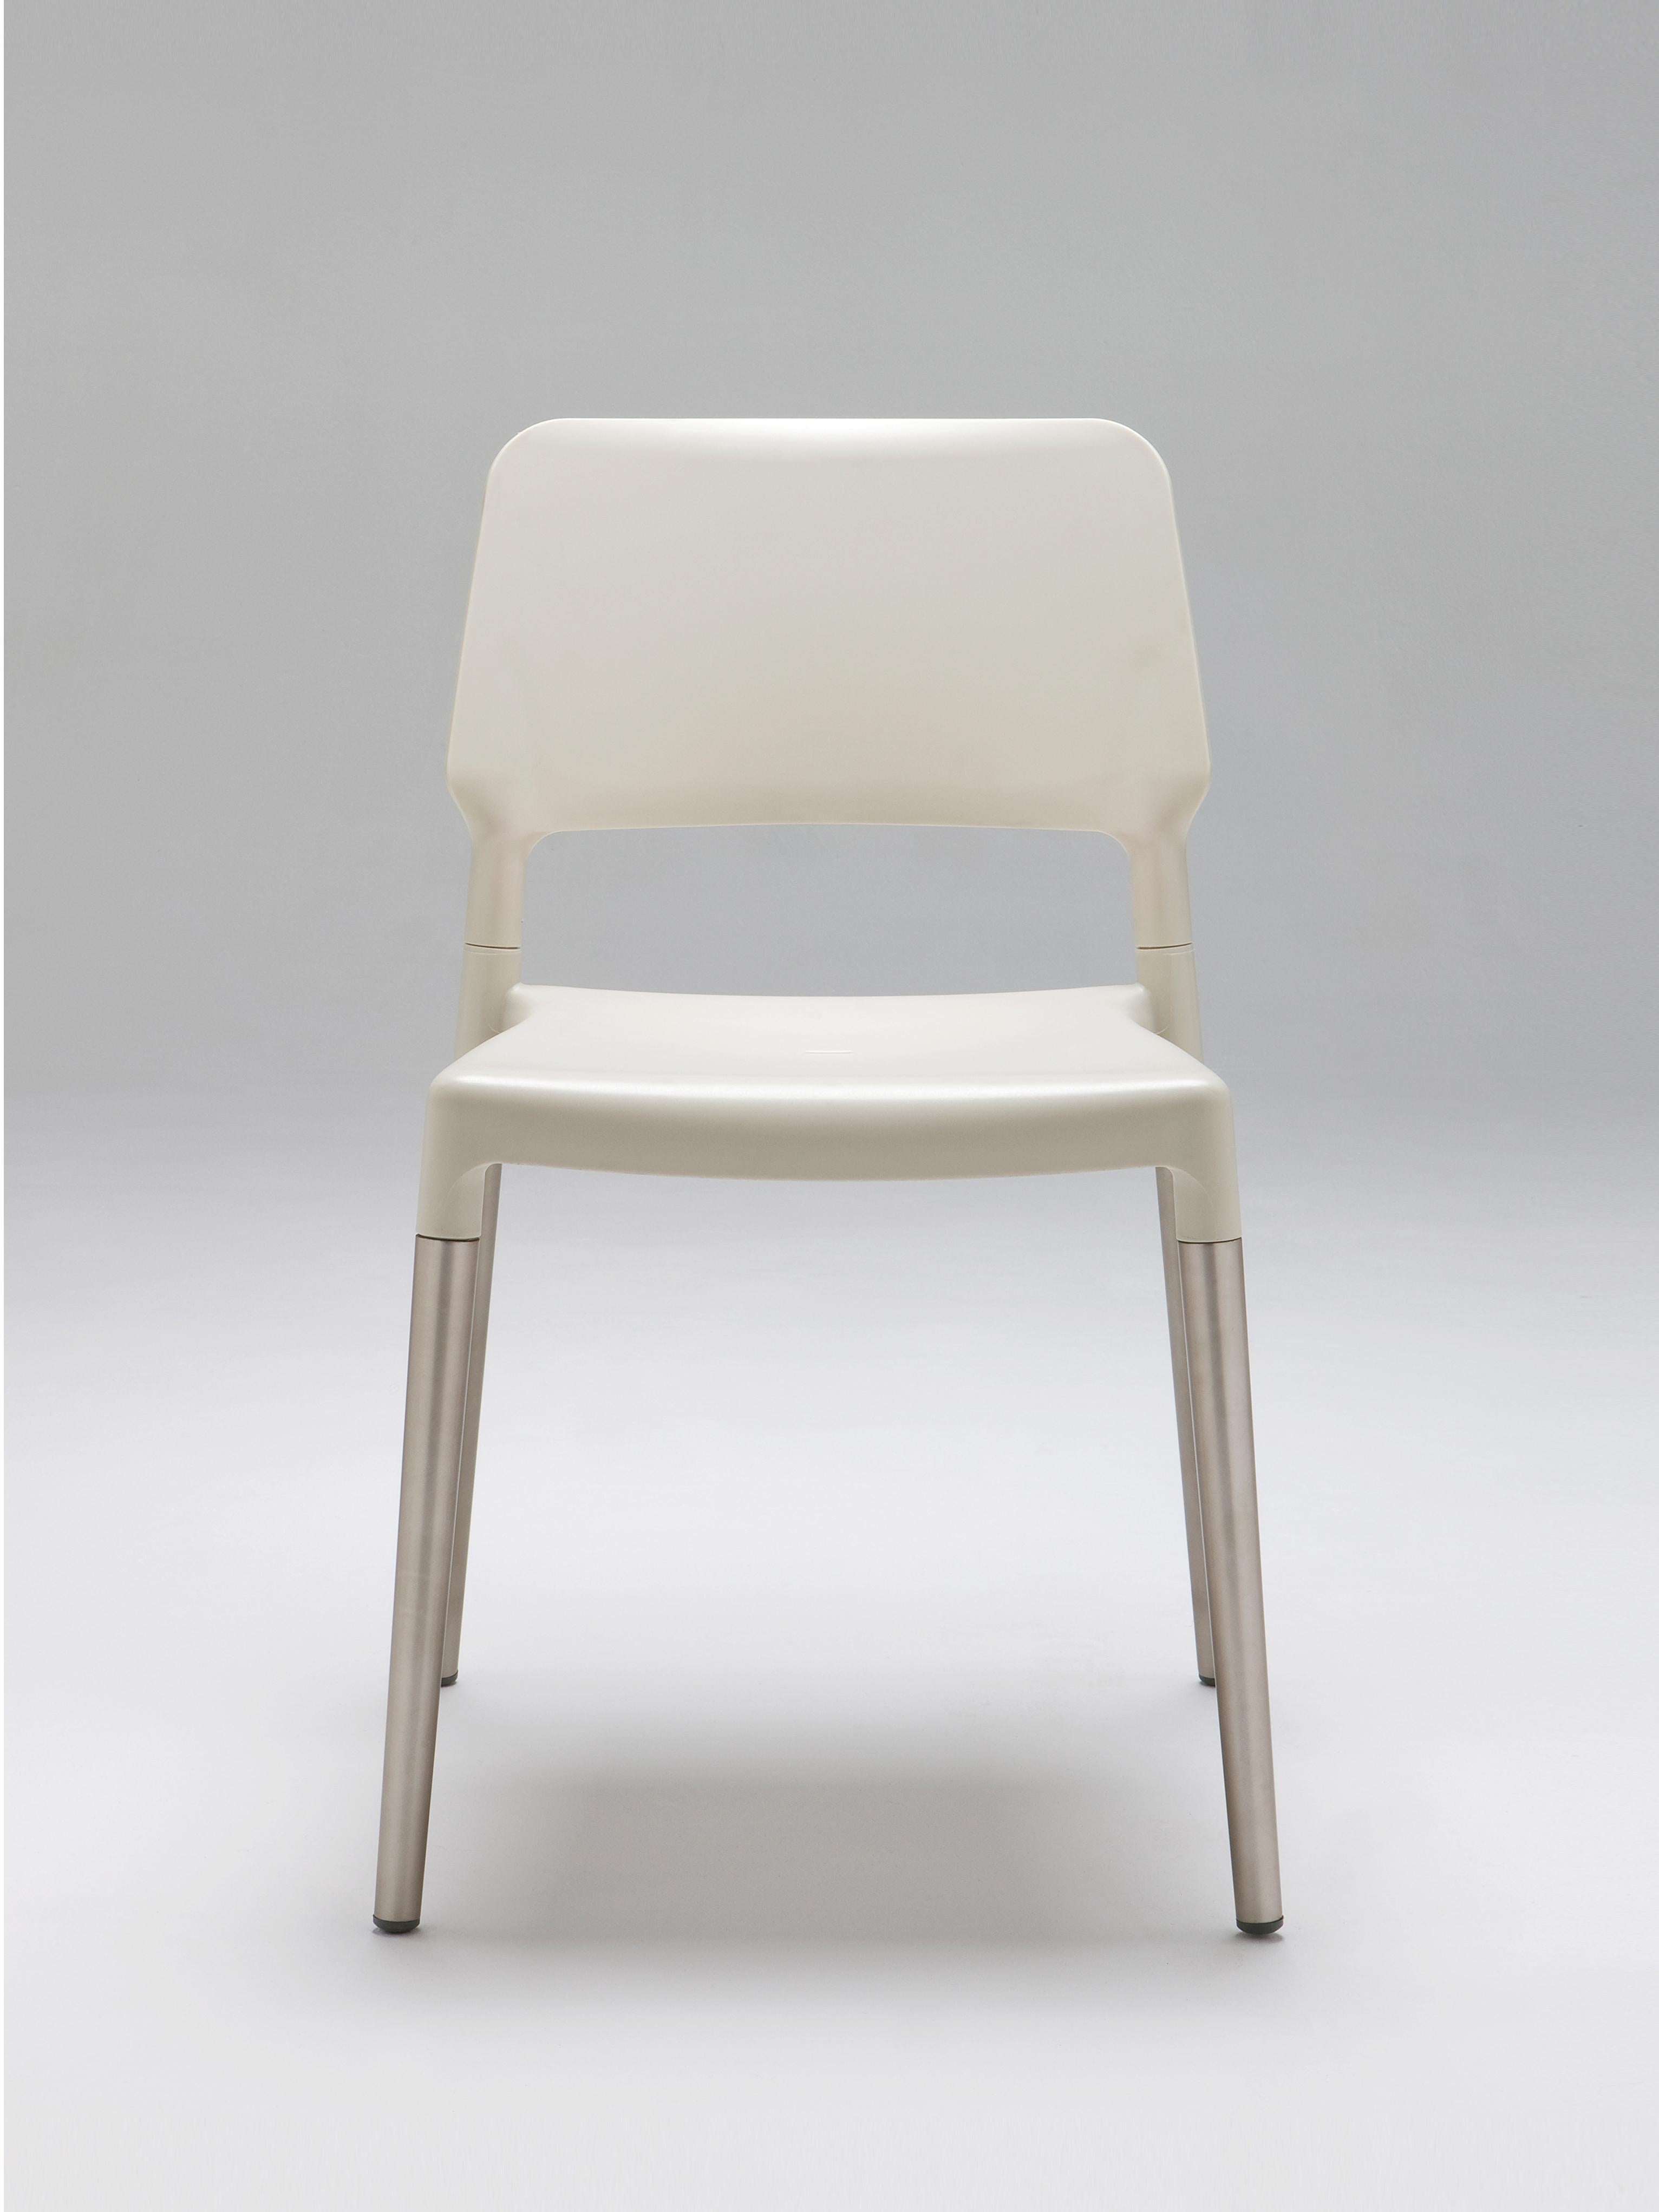 4er set aluminium Belloch esszimmerstühle by Lagranja Design
Abmessungen: T 50 x B 54 x H 79 cm
MATERIALIEN: Aluminium, Polypropylen, Glasfasern.

Der Stuhl Belloch ist das Ergebnis einer Auftragsvergabe für ein leichtes und stapelbares Design.